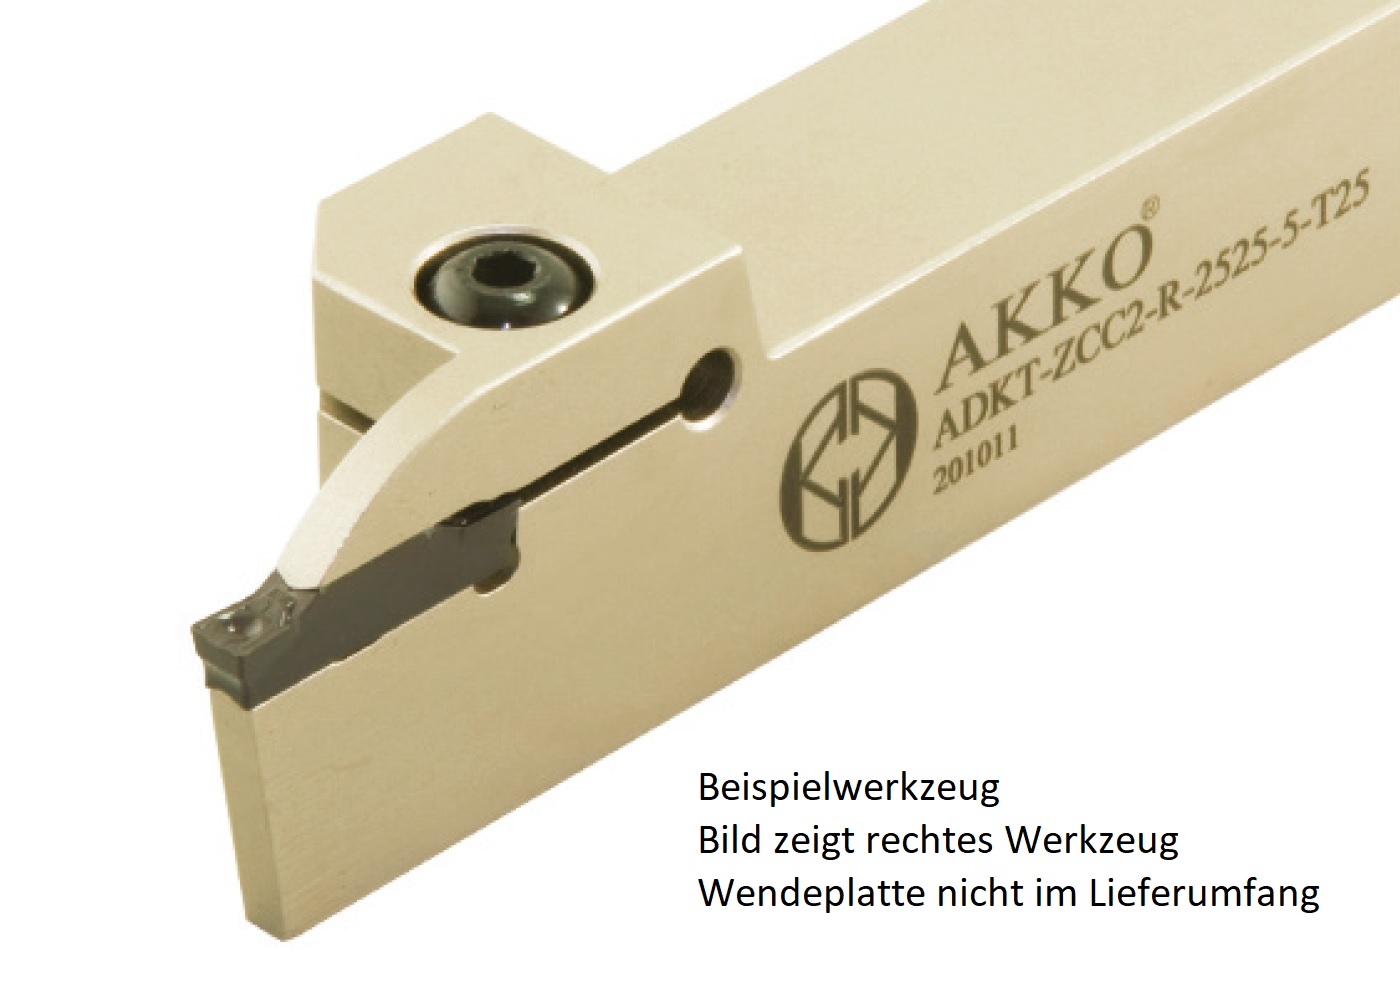 AKKO-Außen-Stechhalter, kompatibel mit ZCC-Stechplatte Z.ED-2.5
links, Schaft 16 x 16 mm